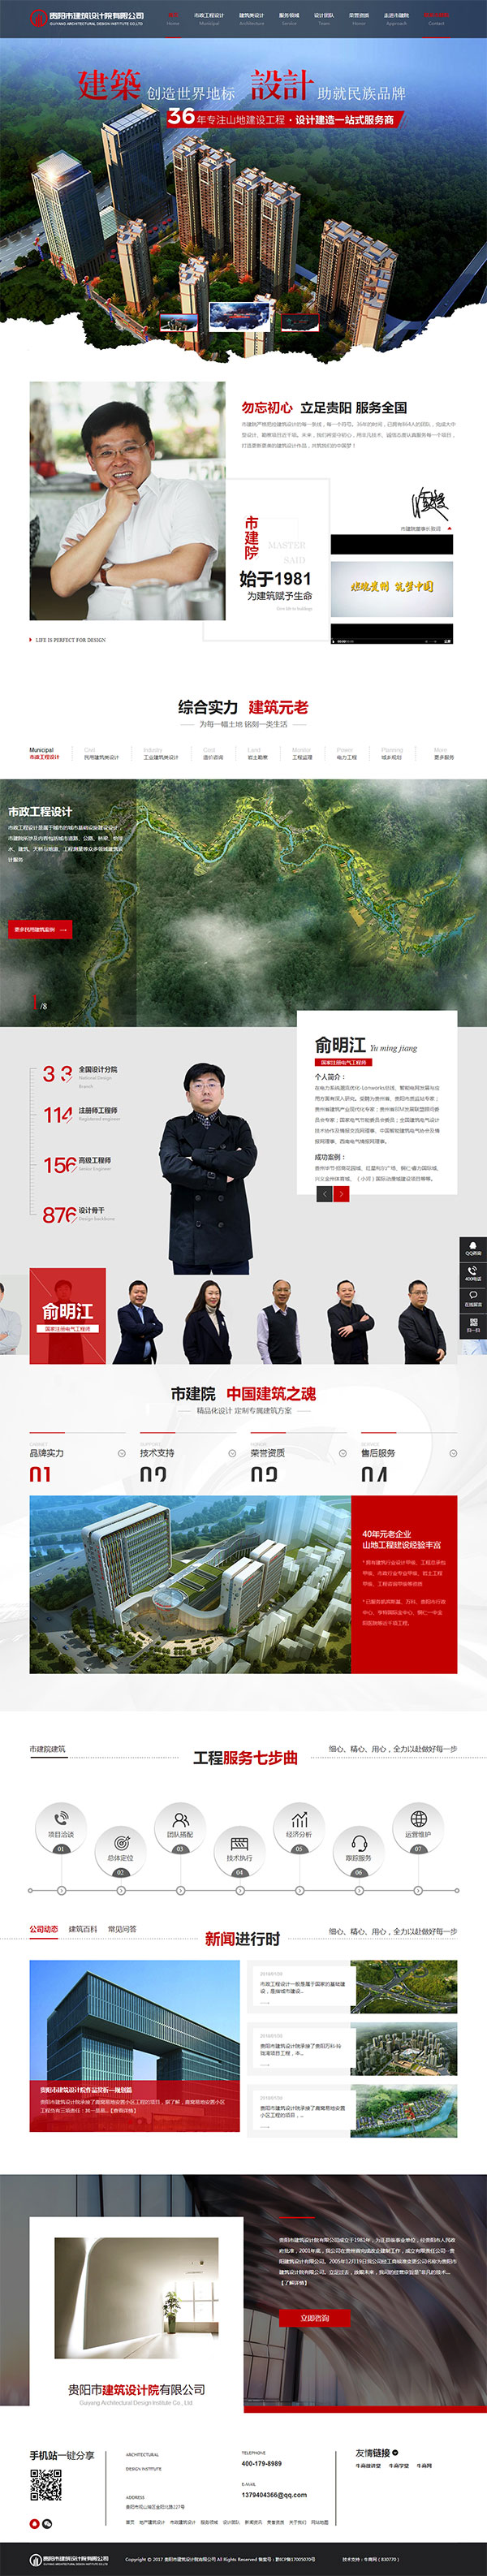 贵阳建筑设计院-营销型网站页面